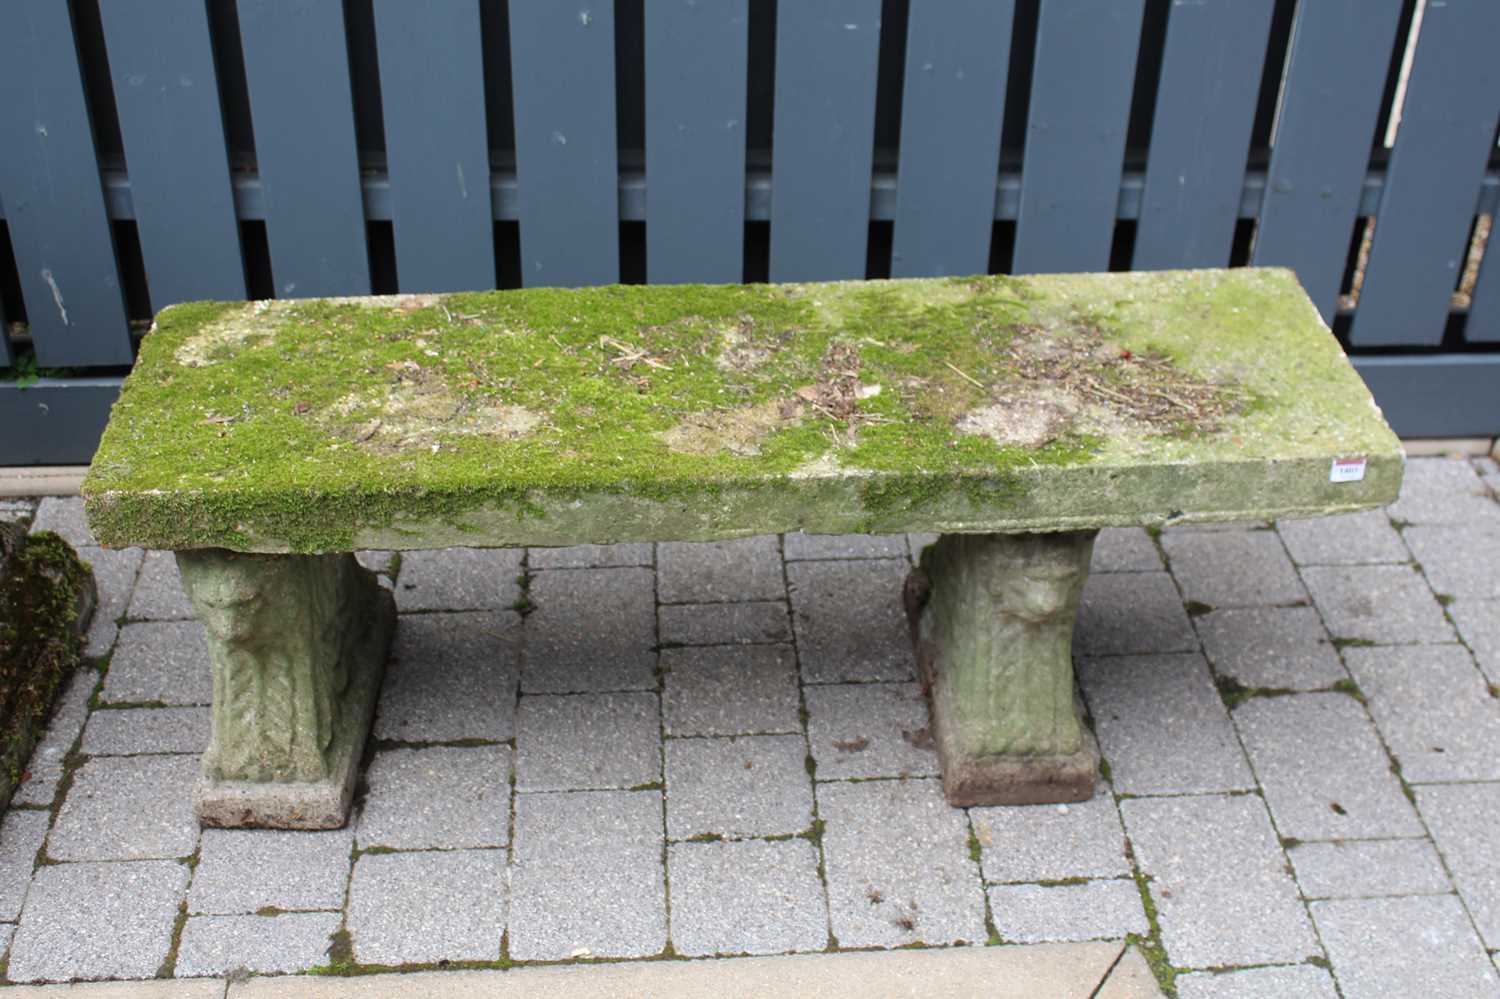 A concrete garden bench raised on twin pedestals, length 122cm